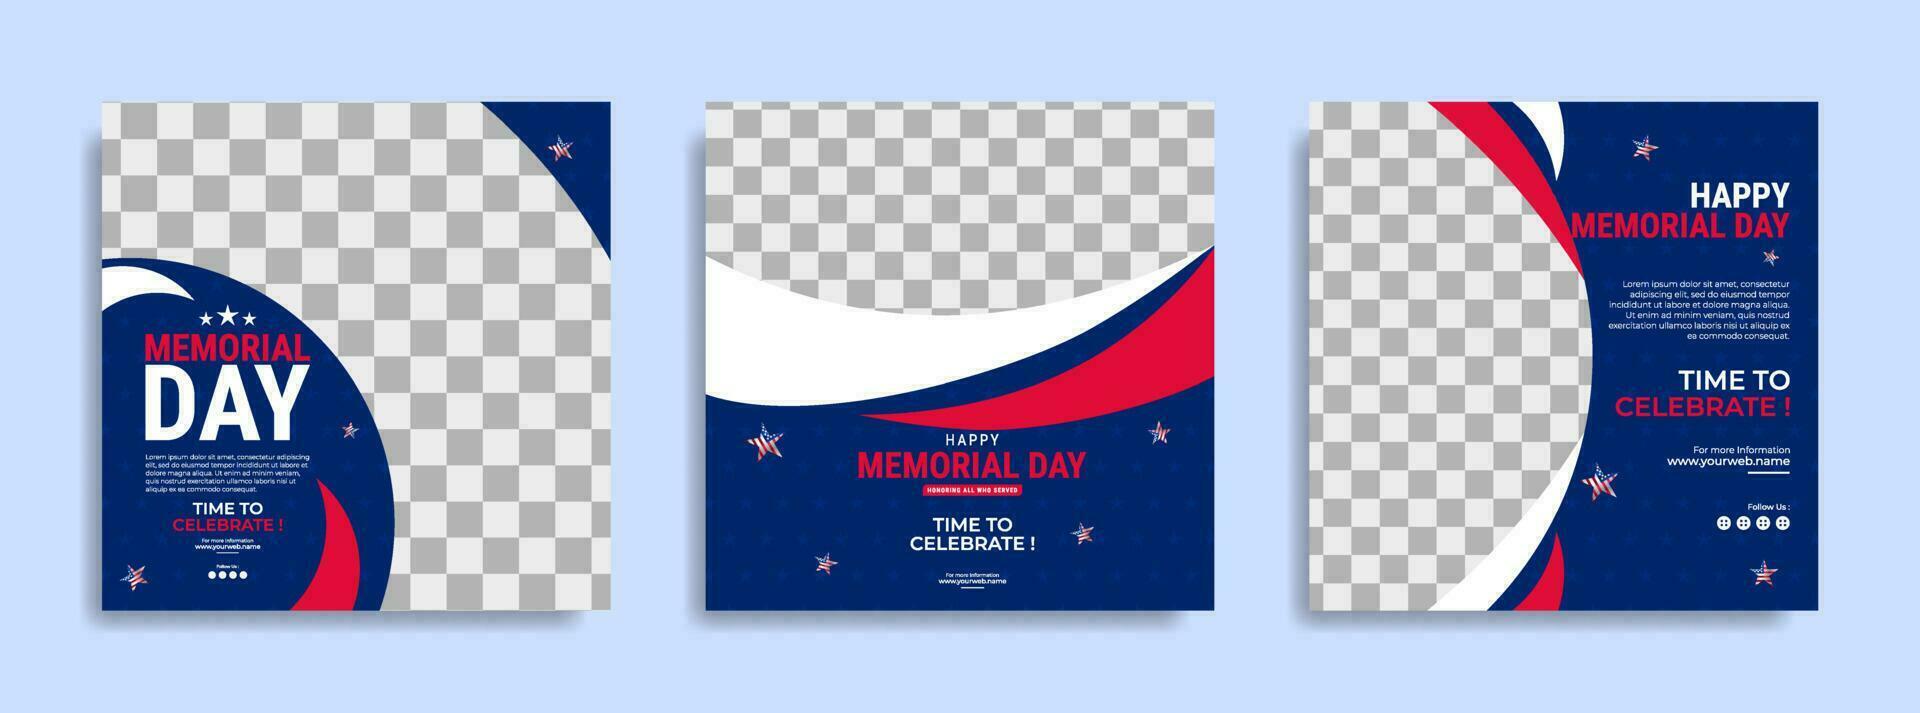 design de modelo de postagem de mídia social do dia do memorial com a bandeira nacional dos estados unidos da américa vetor